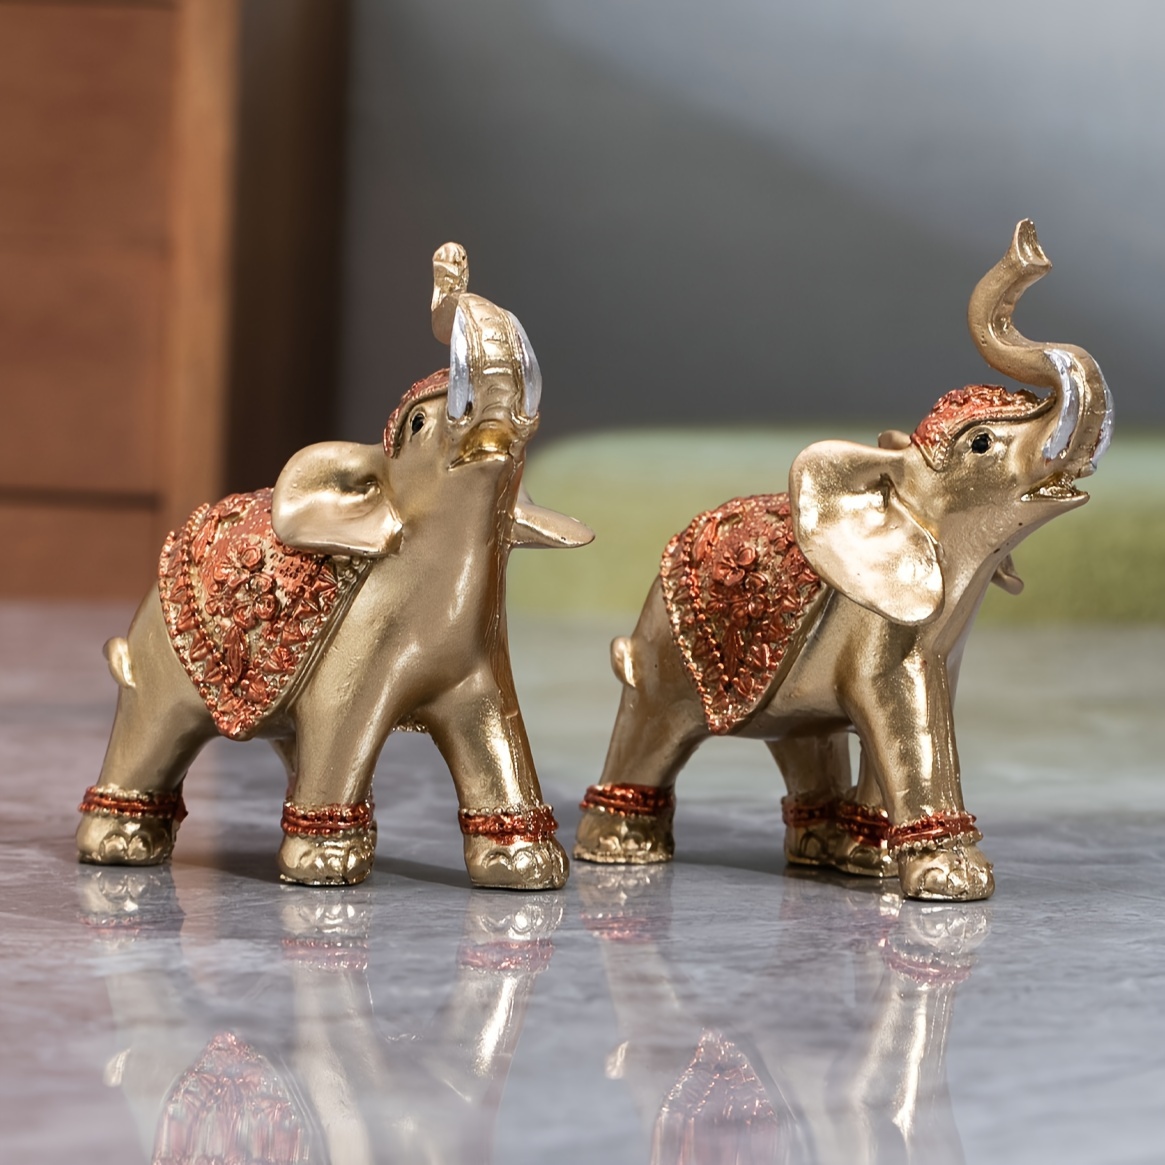 Juego de decoración de elefante de la suerte con troncos – Feng Shui resina  negro y dorado pareja elefante figuritas – Par de estatuas de elefantes